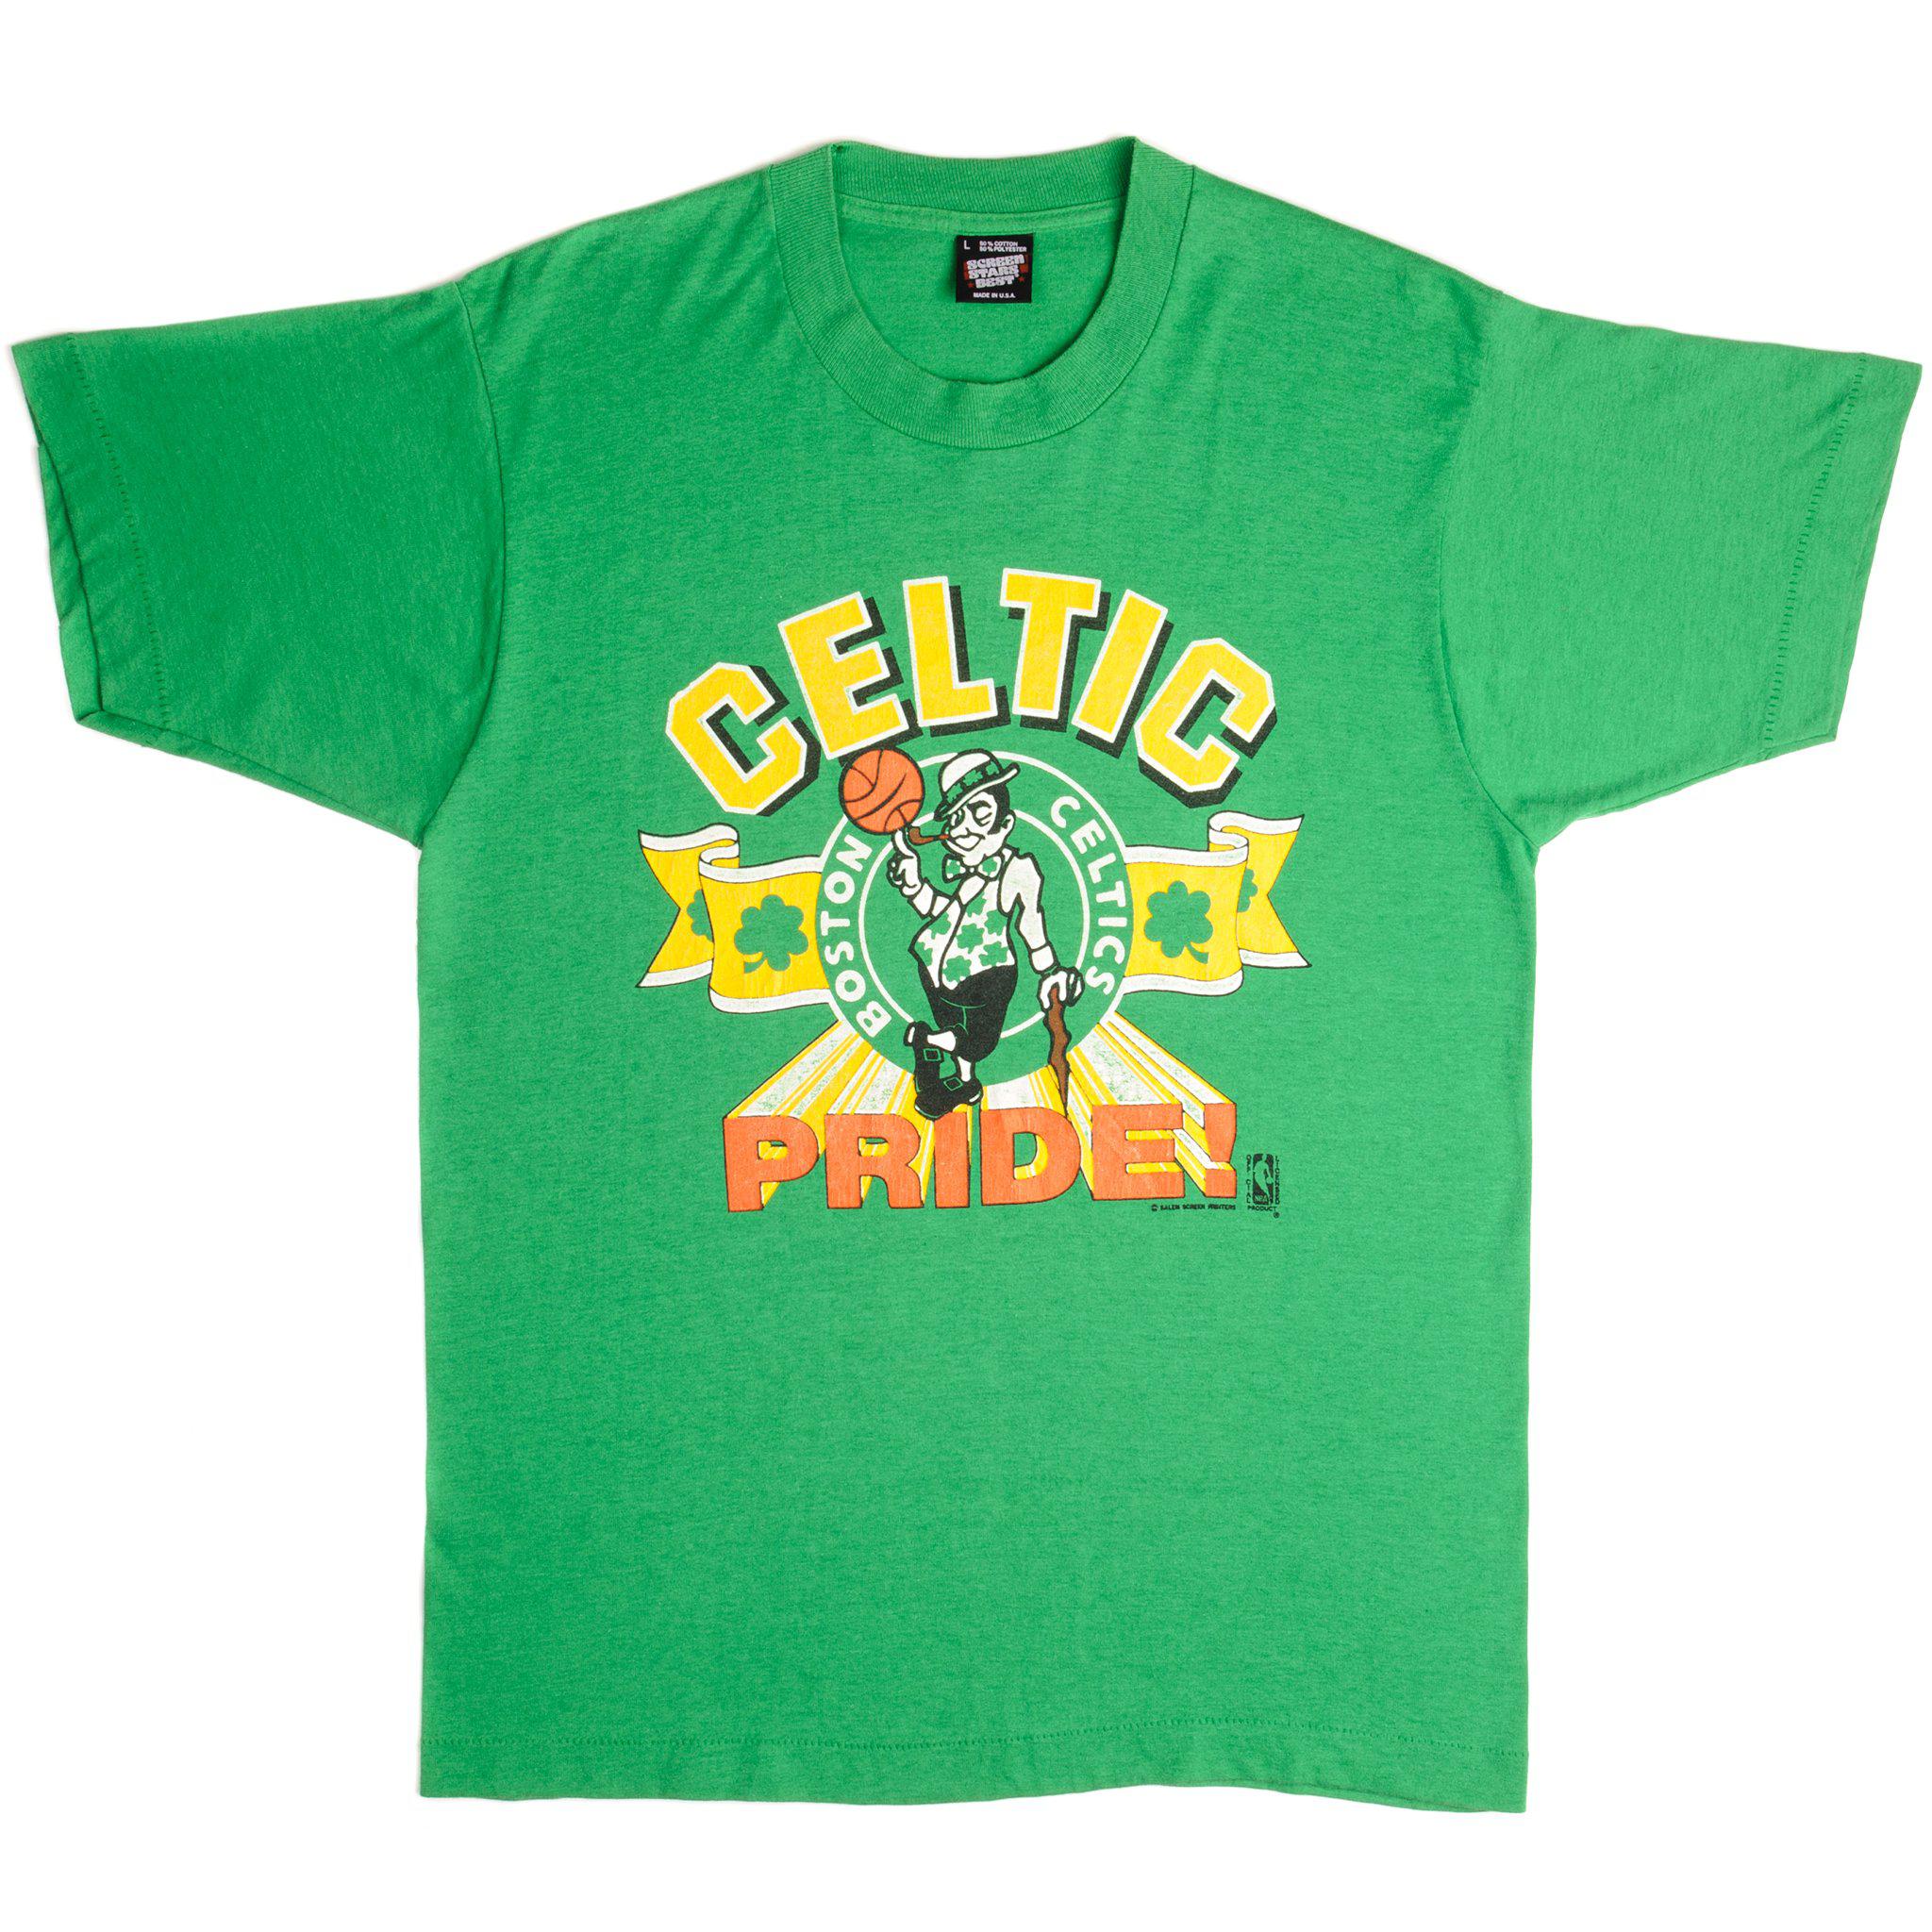 Celtics Pride 16th Championship Tshirt size Small – Mr. Throwback NYC